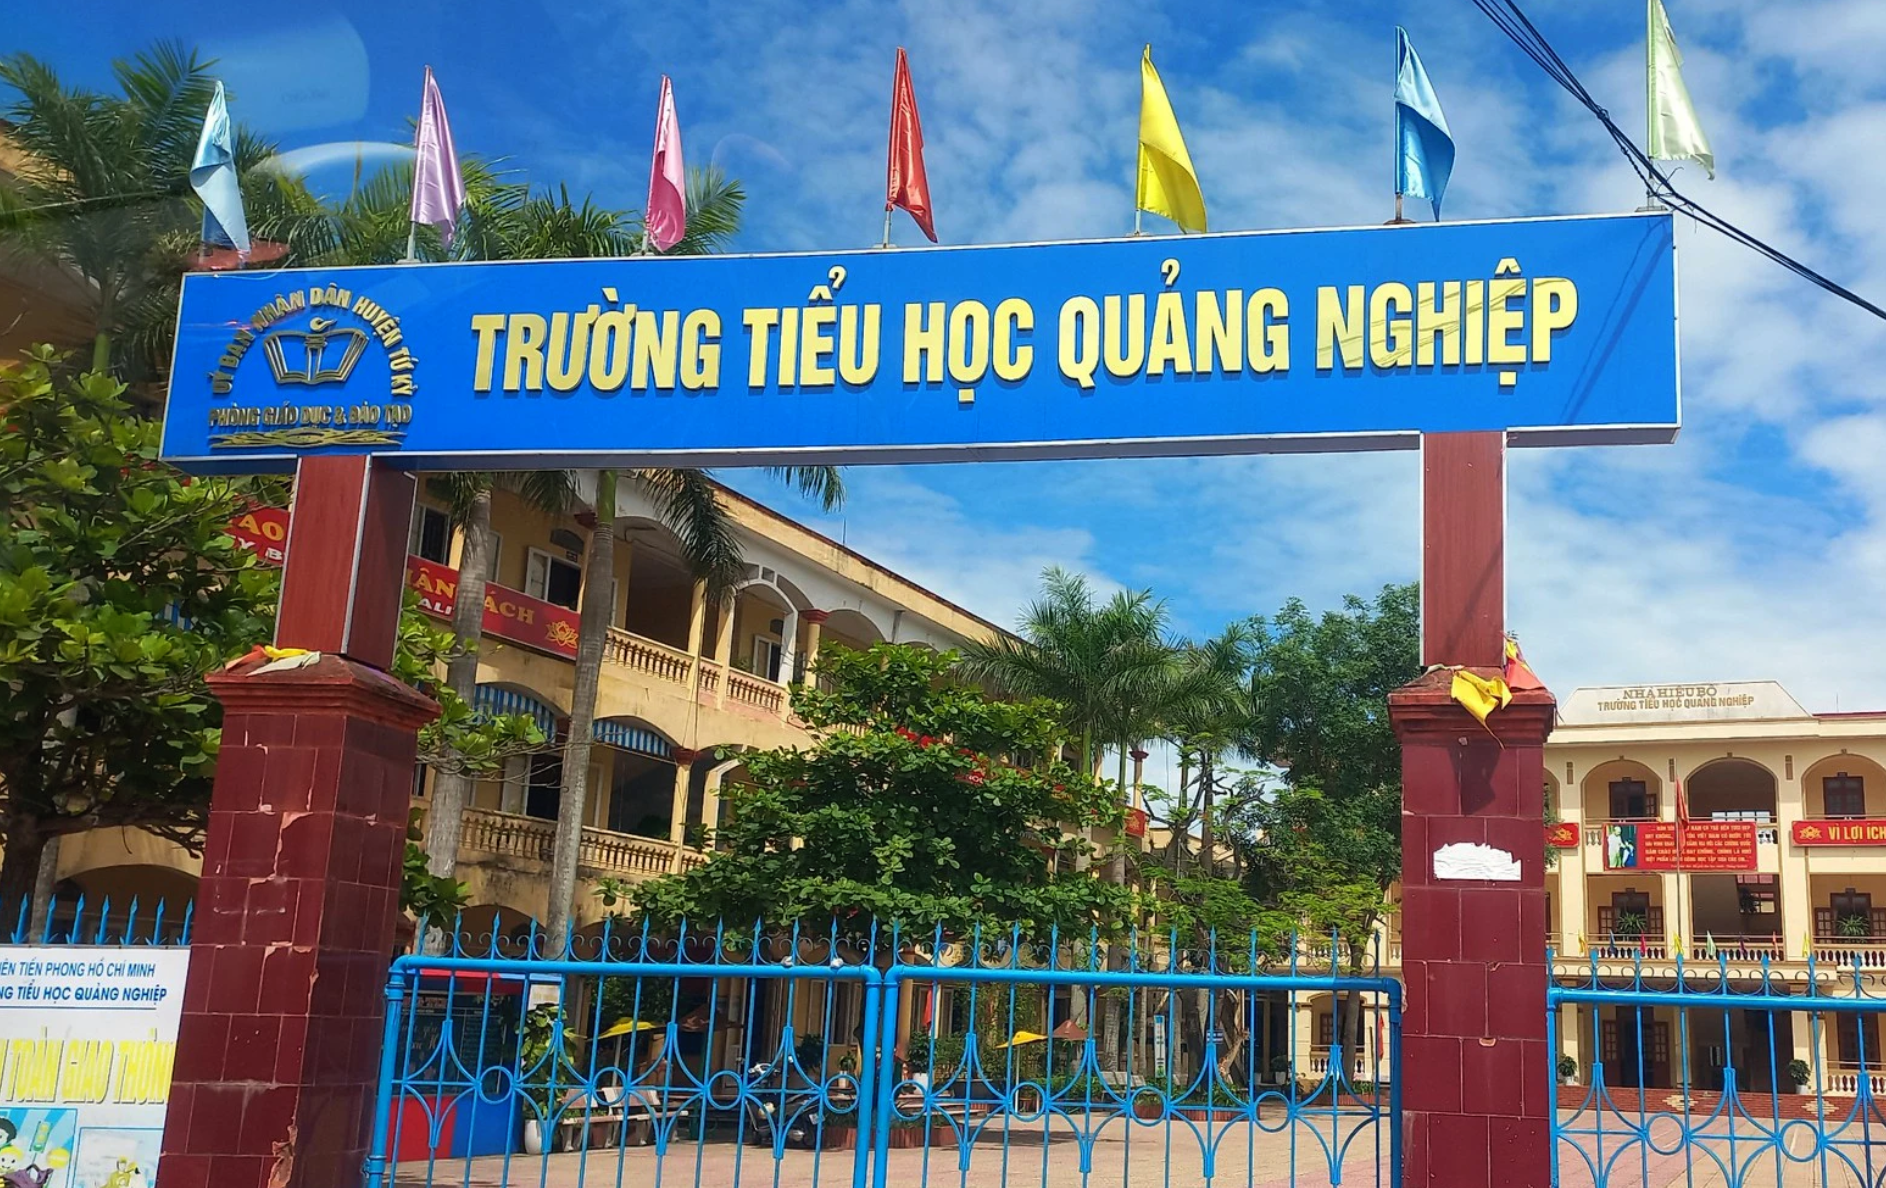 Trường Tiểu học Quảng Nghiệp (huyện Tứ Kỳ, Hải Dương).